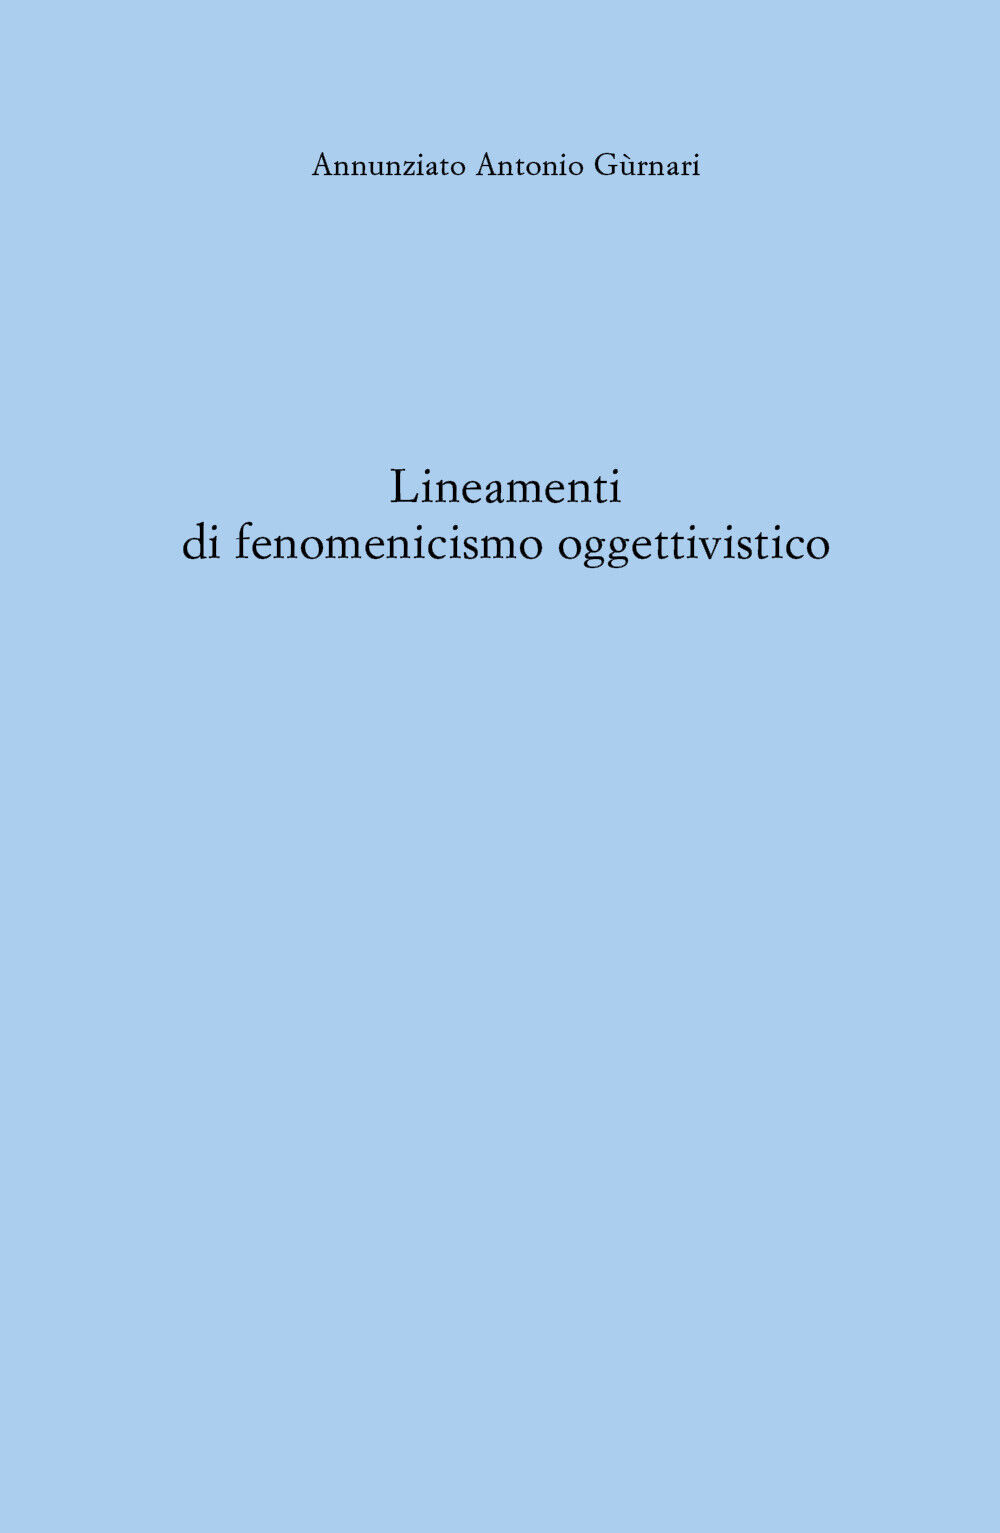 Lineamenti di fenomenicismo oggettivistico di Annunziato Antonio G?rnari,  2021,